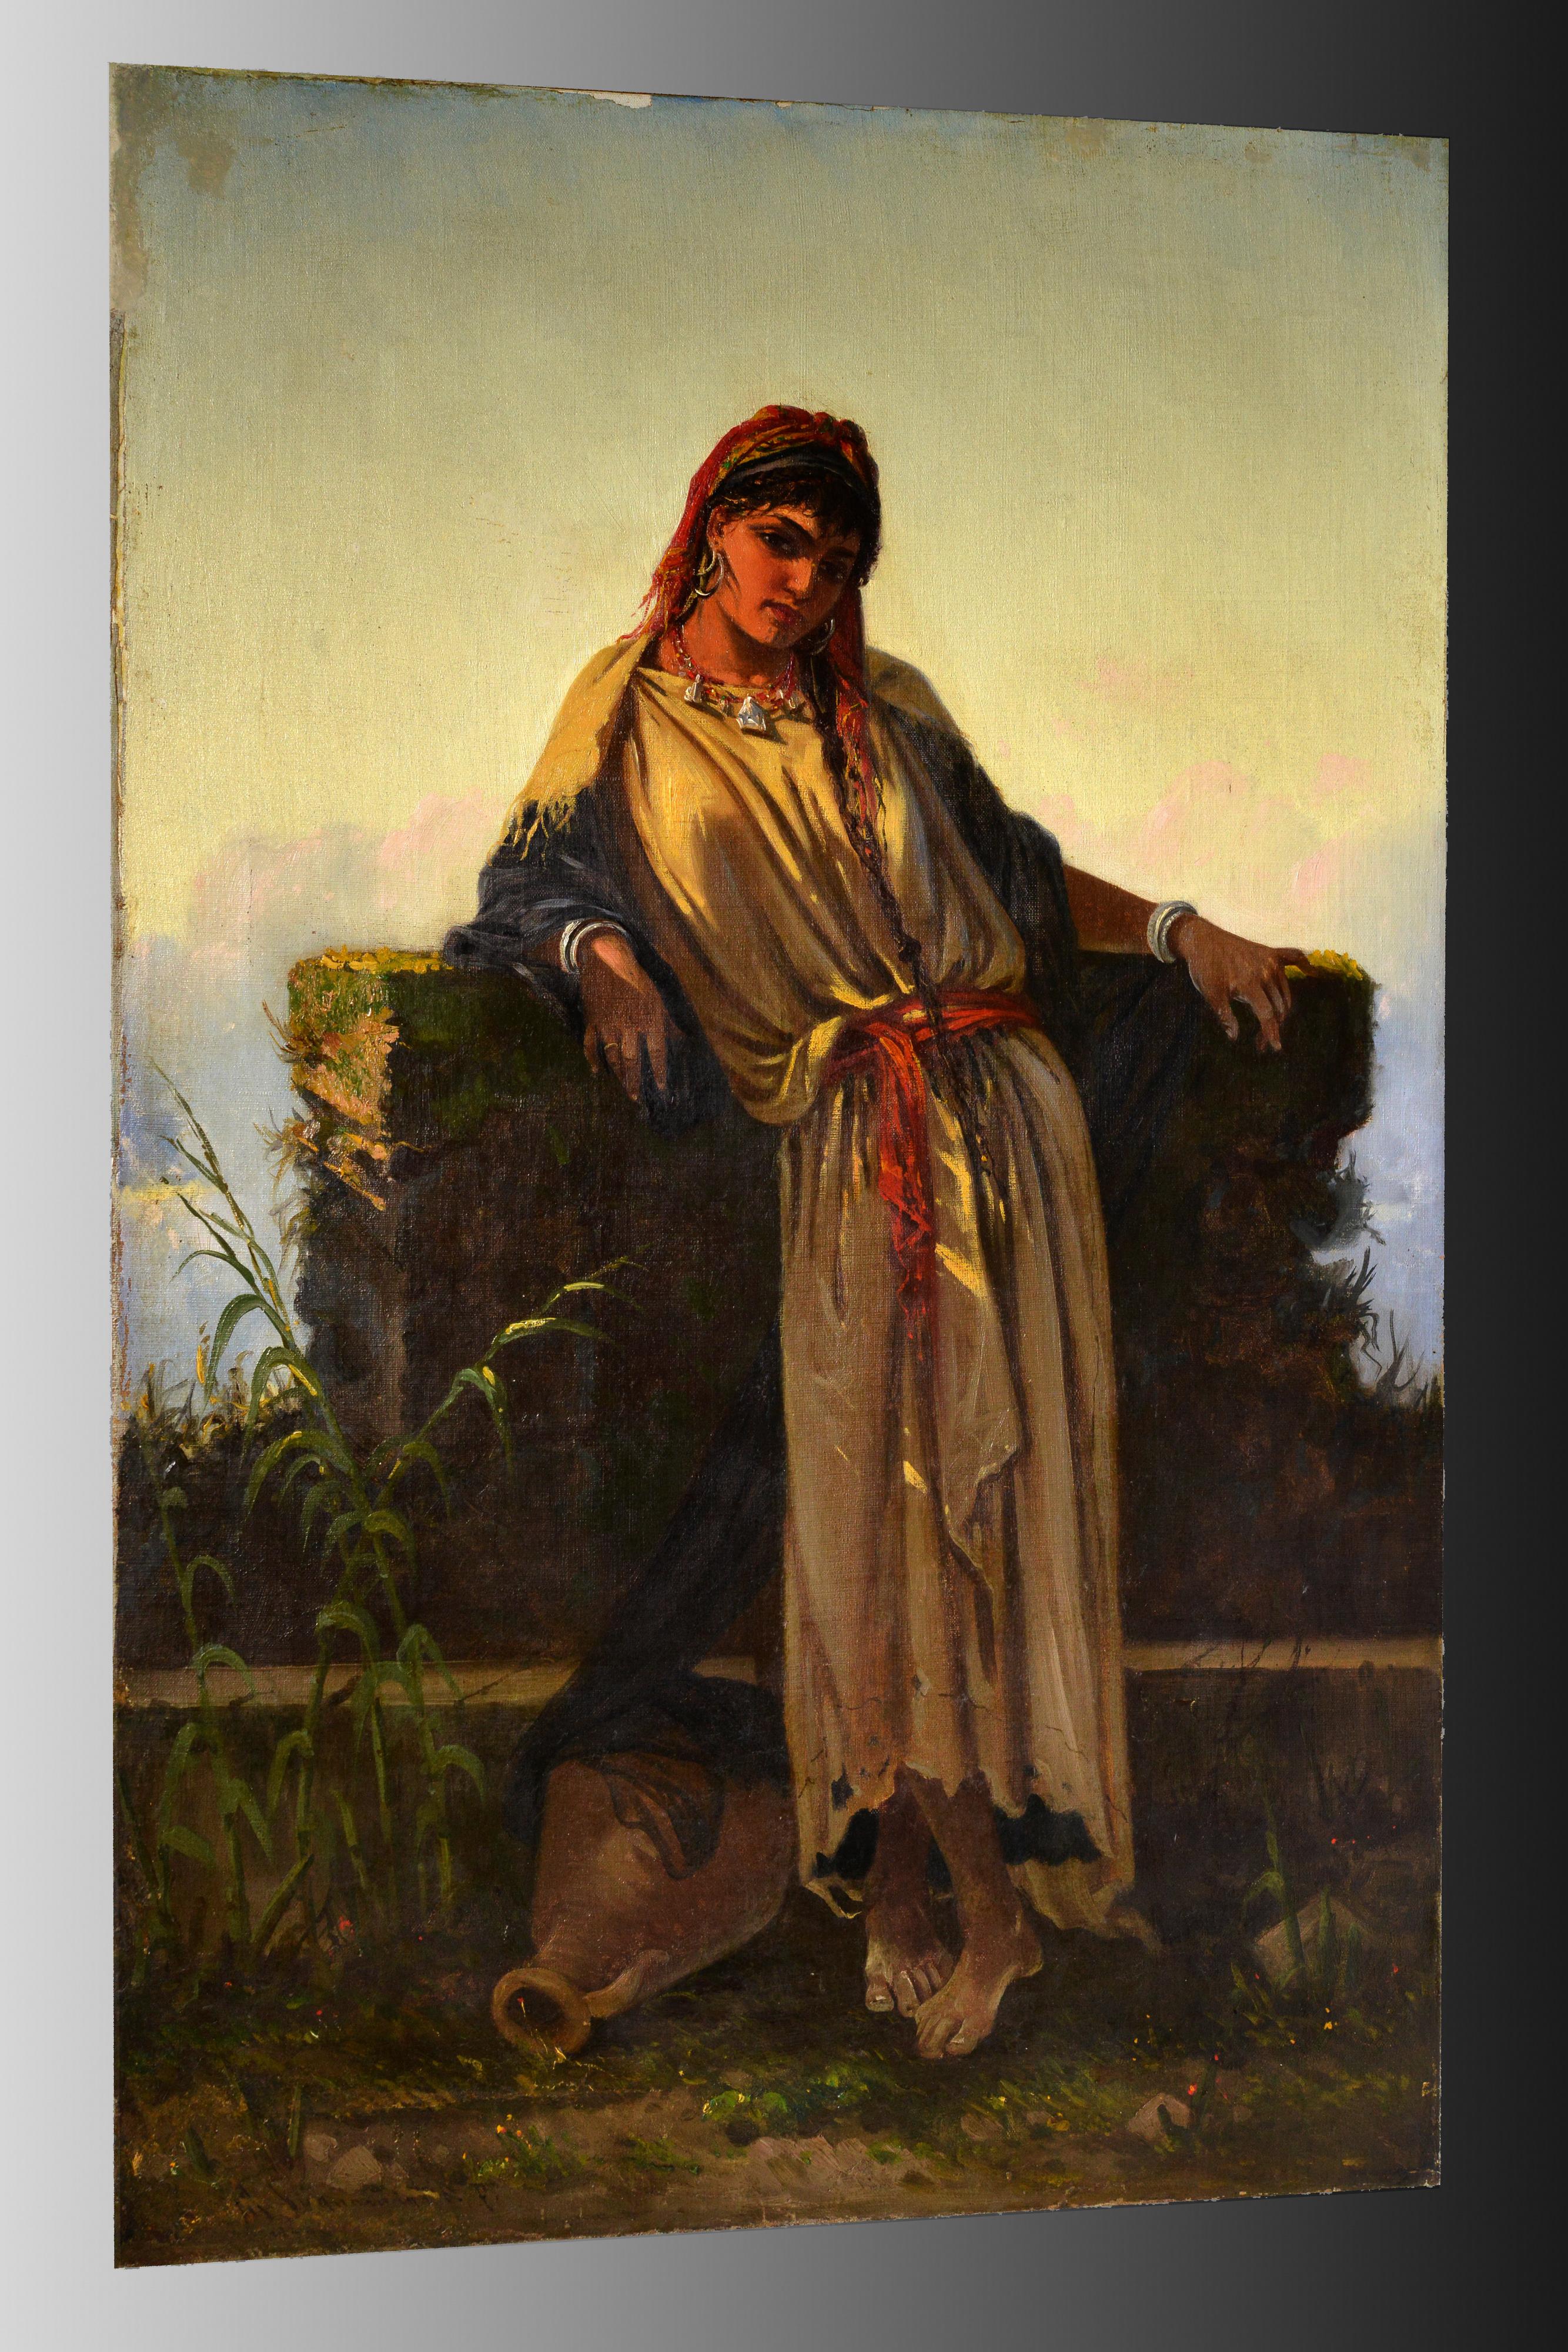 Italienische Genreporträt-Schönheit des Nahen Ostens in einem Ölgemälde aus dem 19. Jahrhundert – Painting von Cavaliere Antonio Scognamiglio